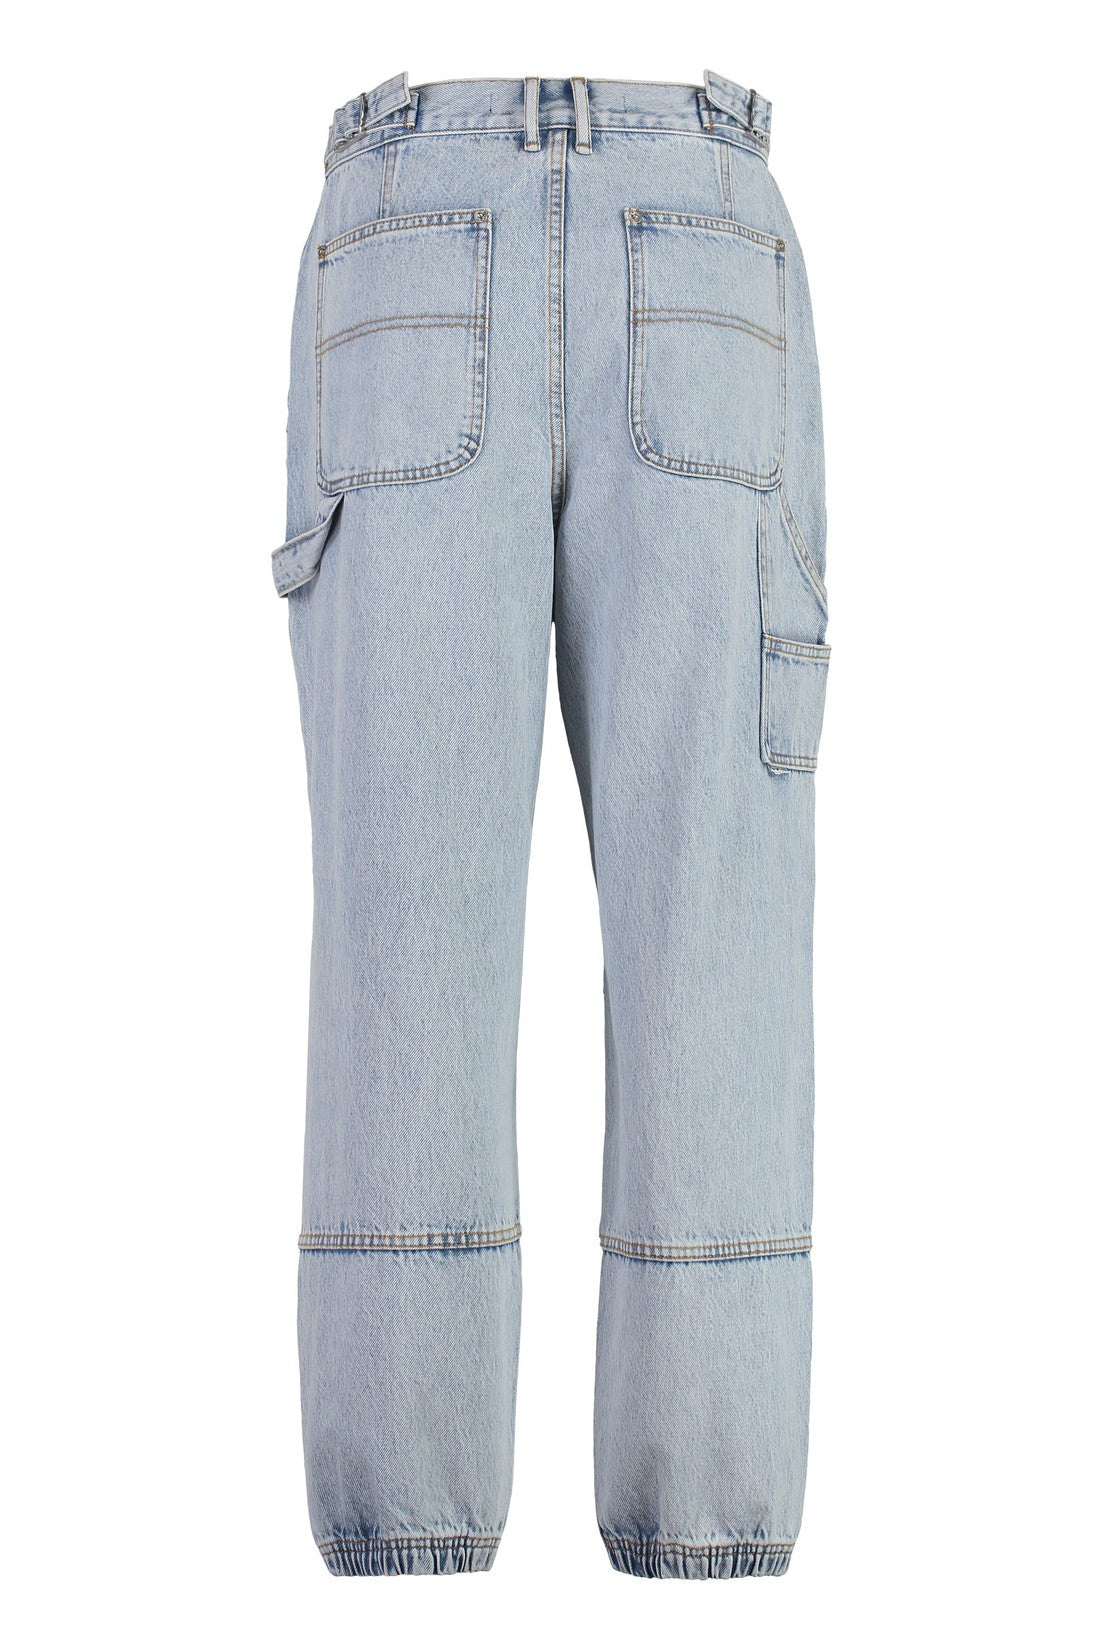 Alexander Wang-OUTLET-SALE-Carpenter Wide-leg jeans-ARCHIVIST